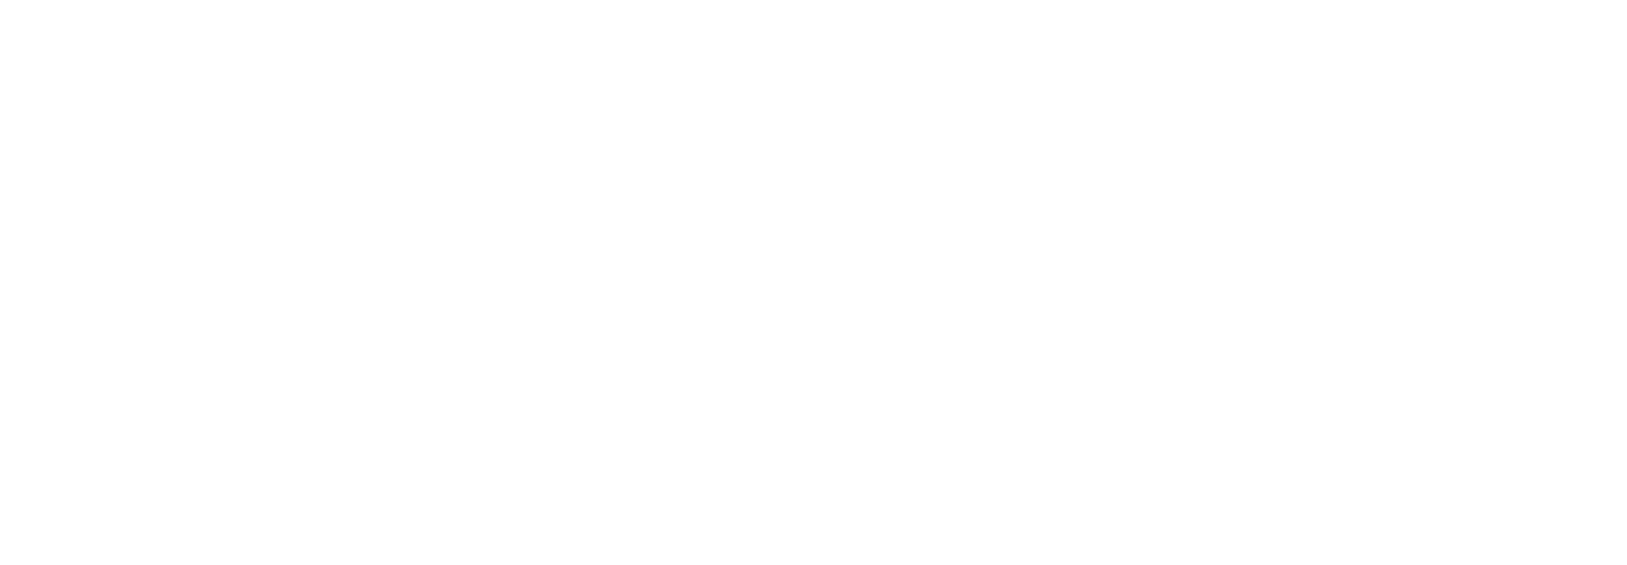 Uber logo for dark backgrounds (transparent PNG)